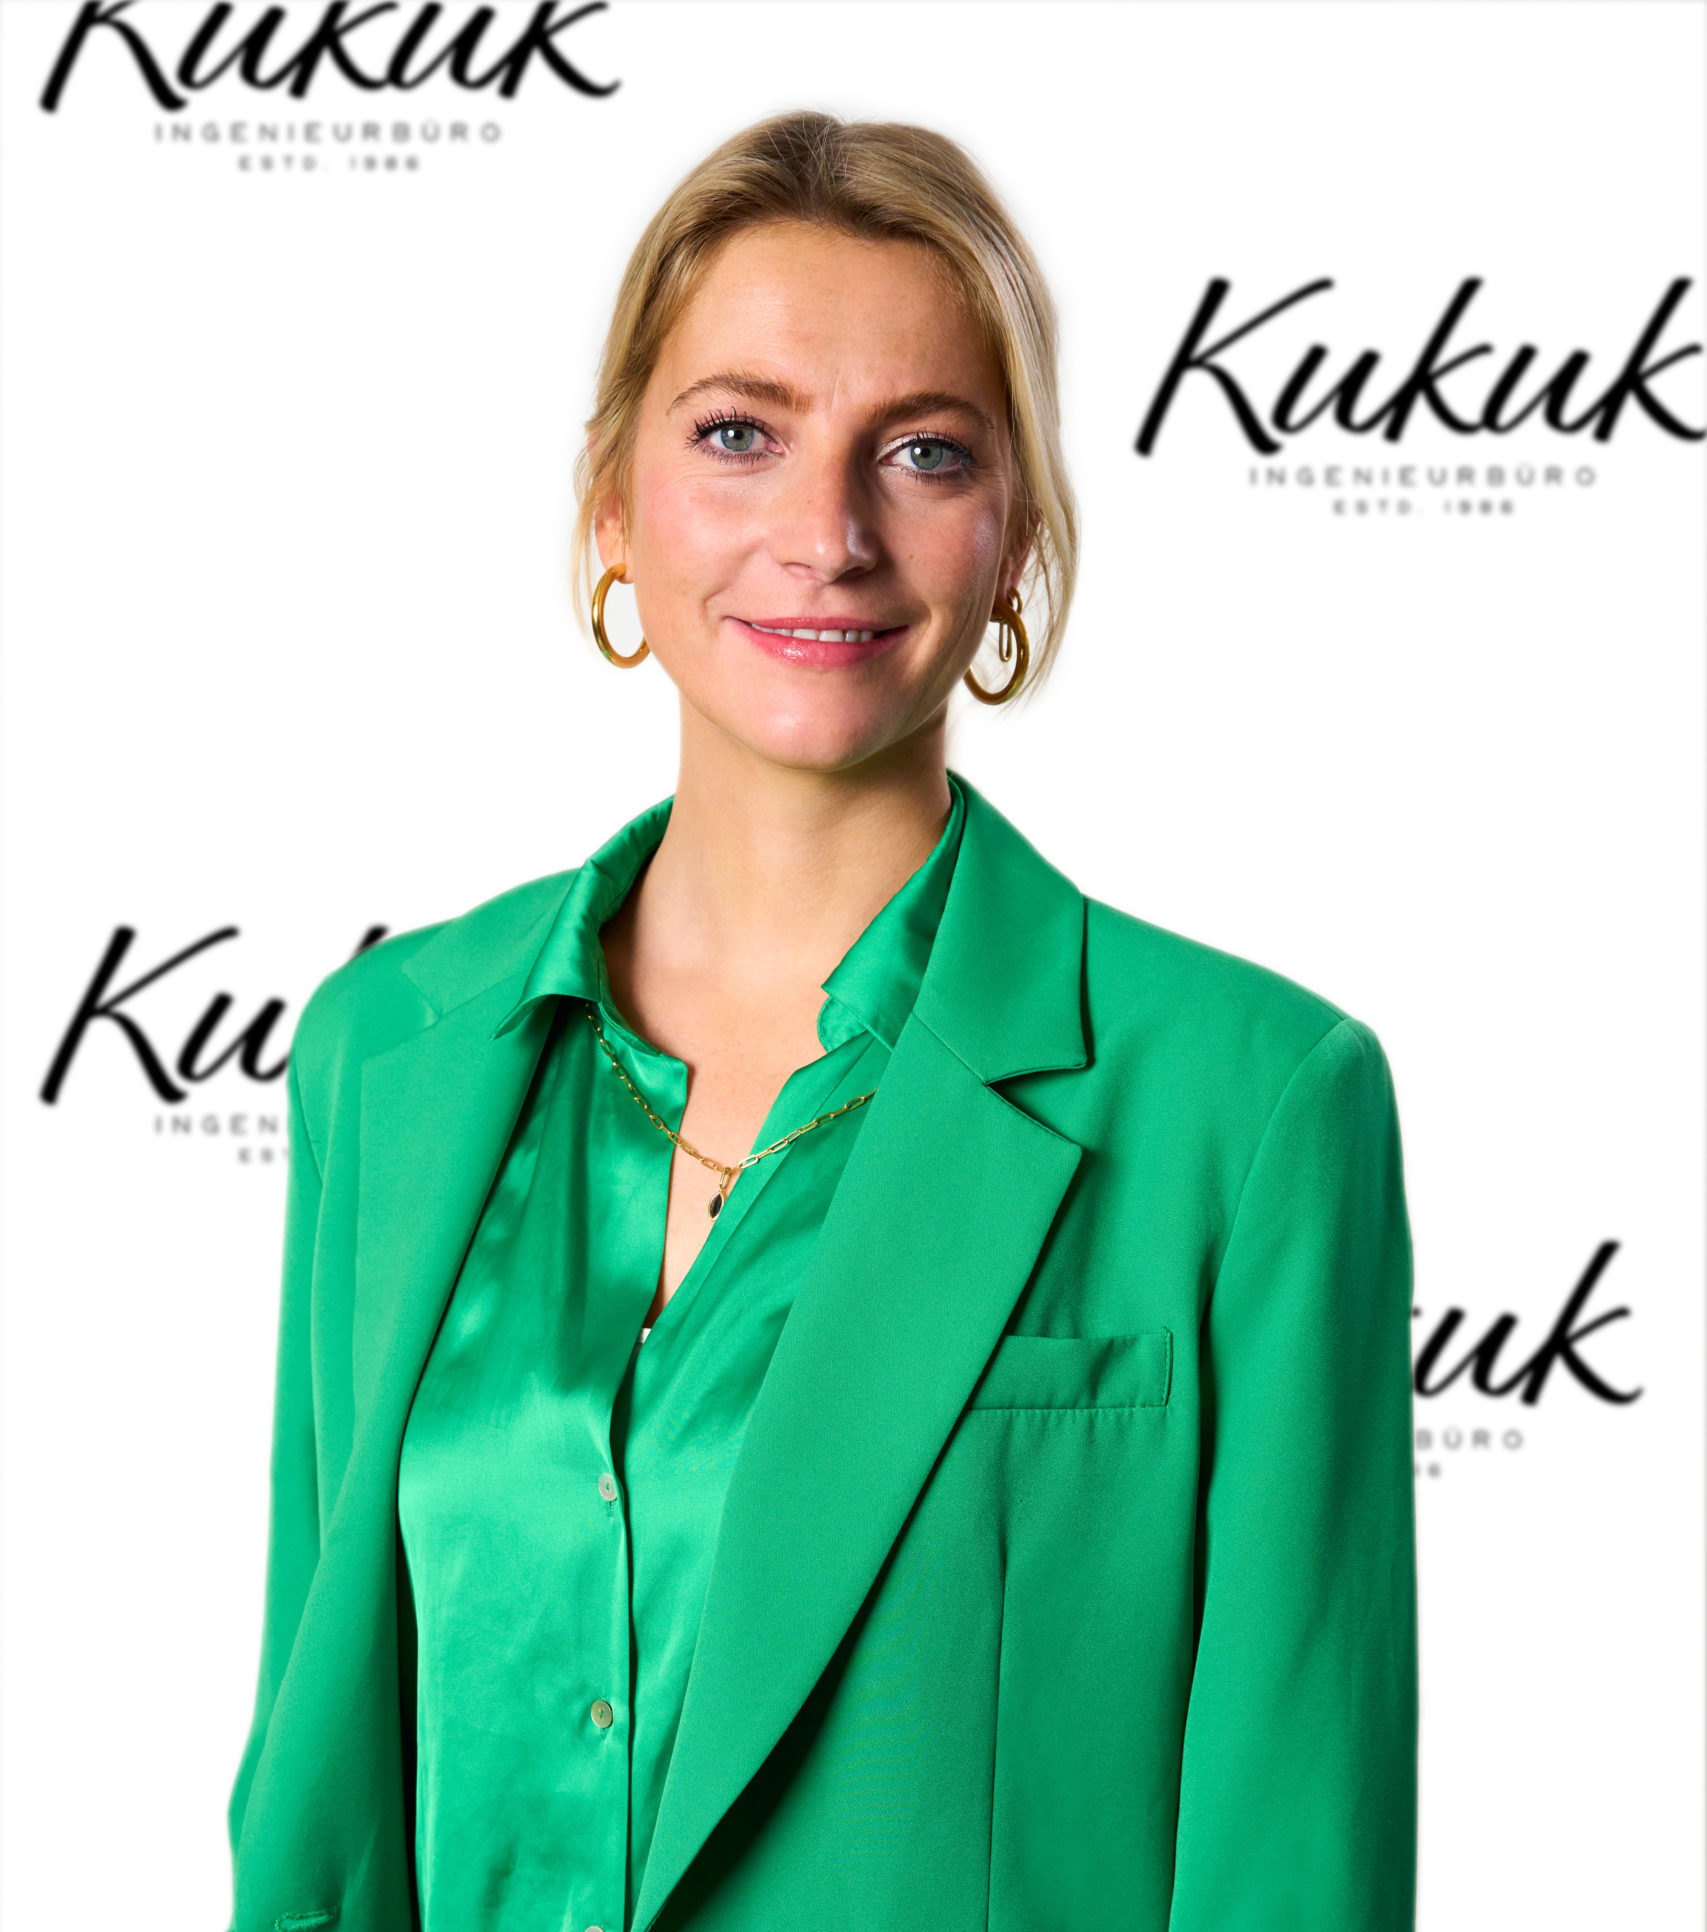 Vehicle engineer Laura Kukuk